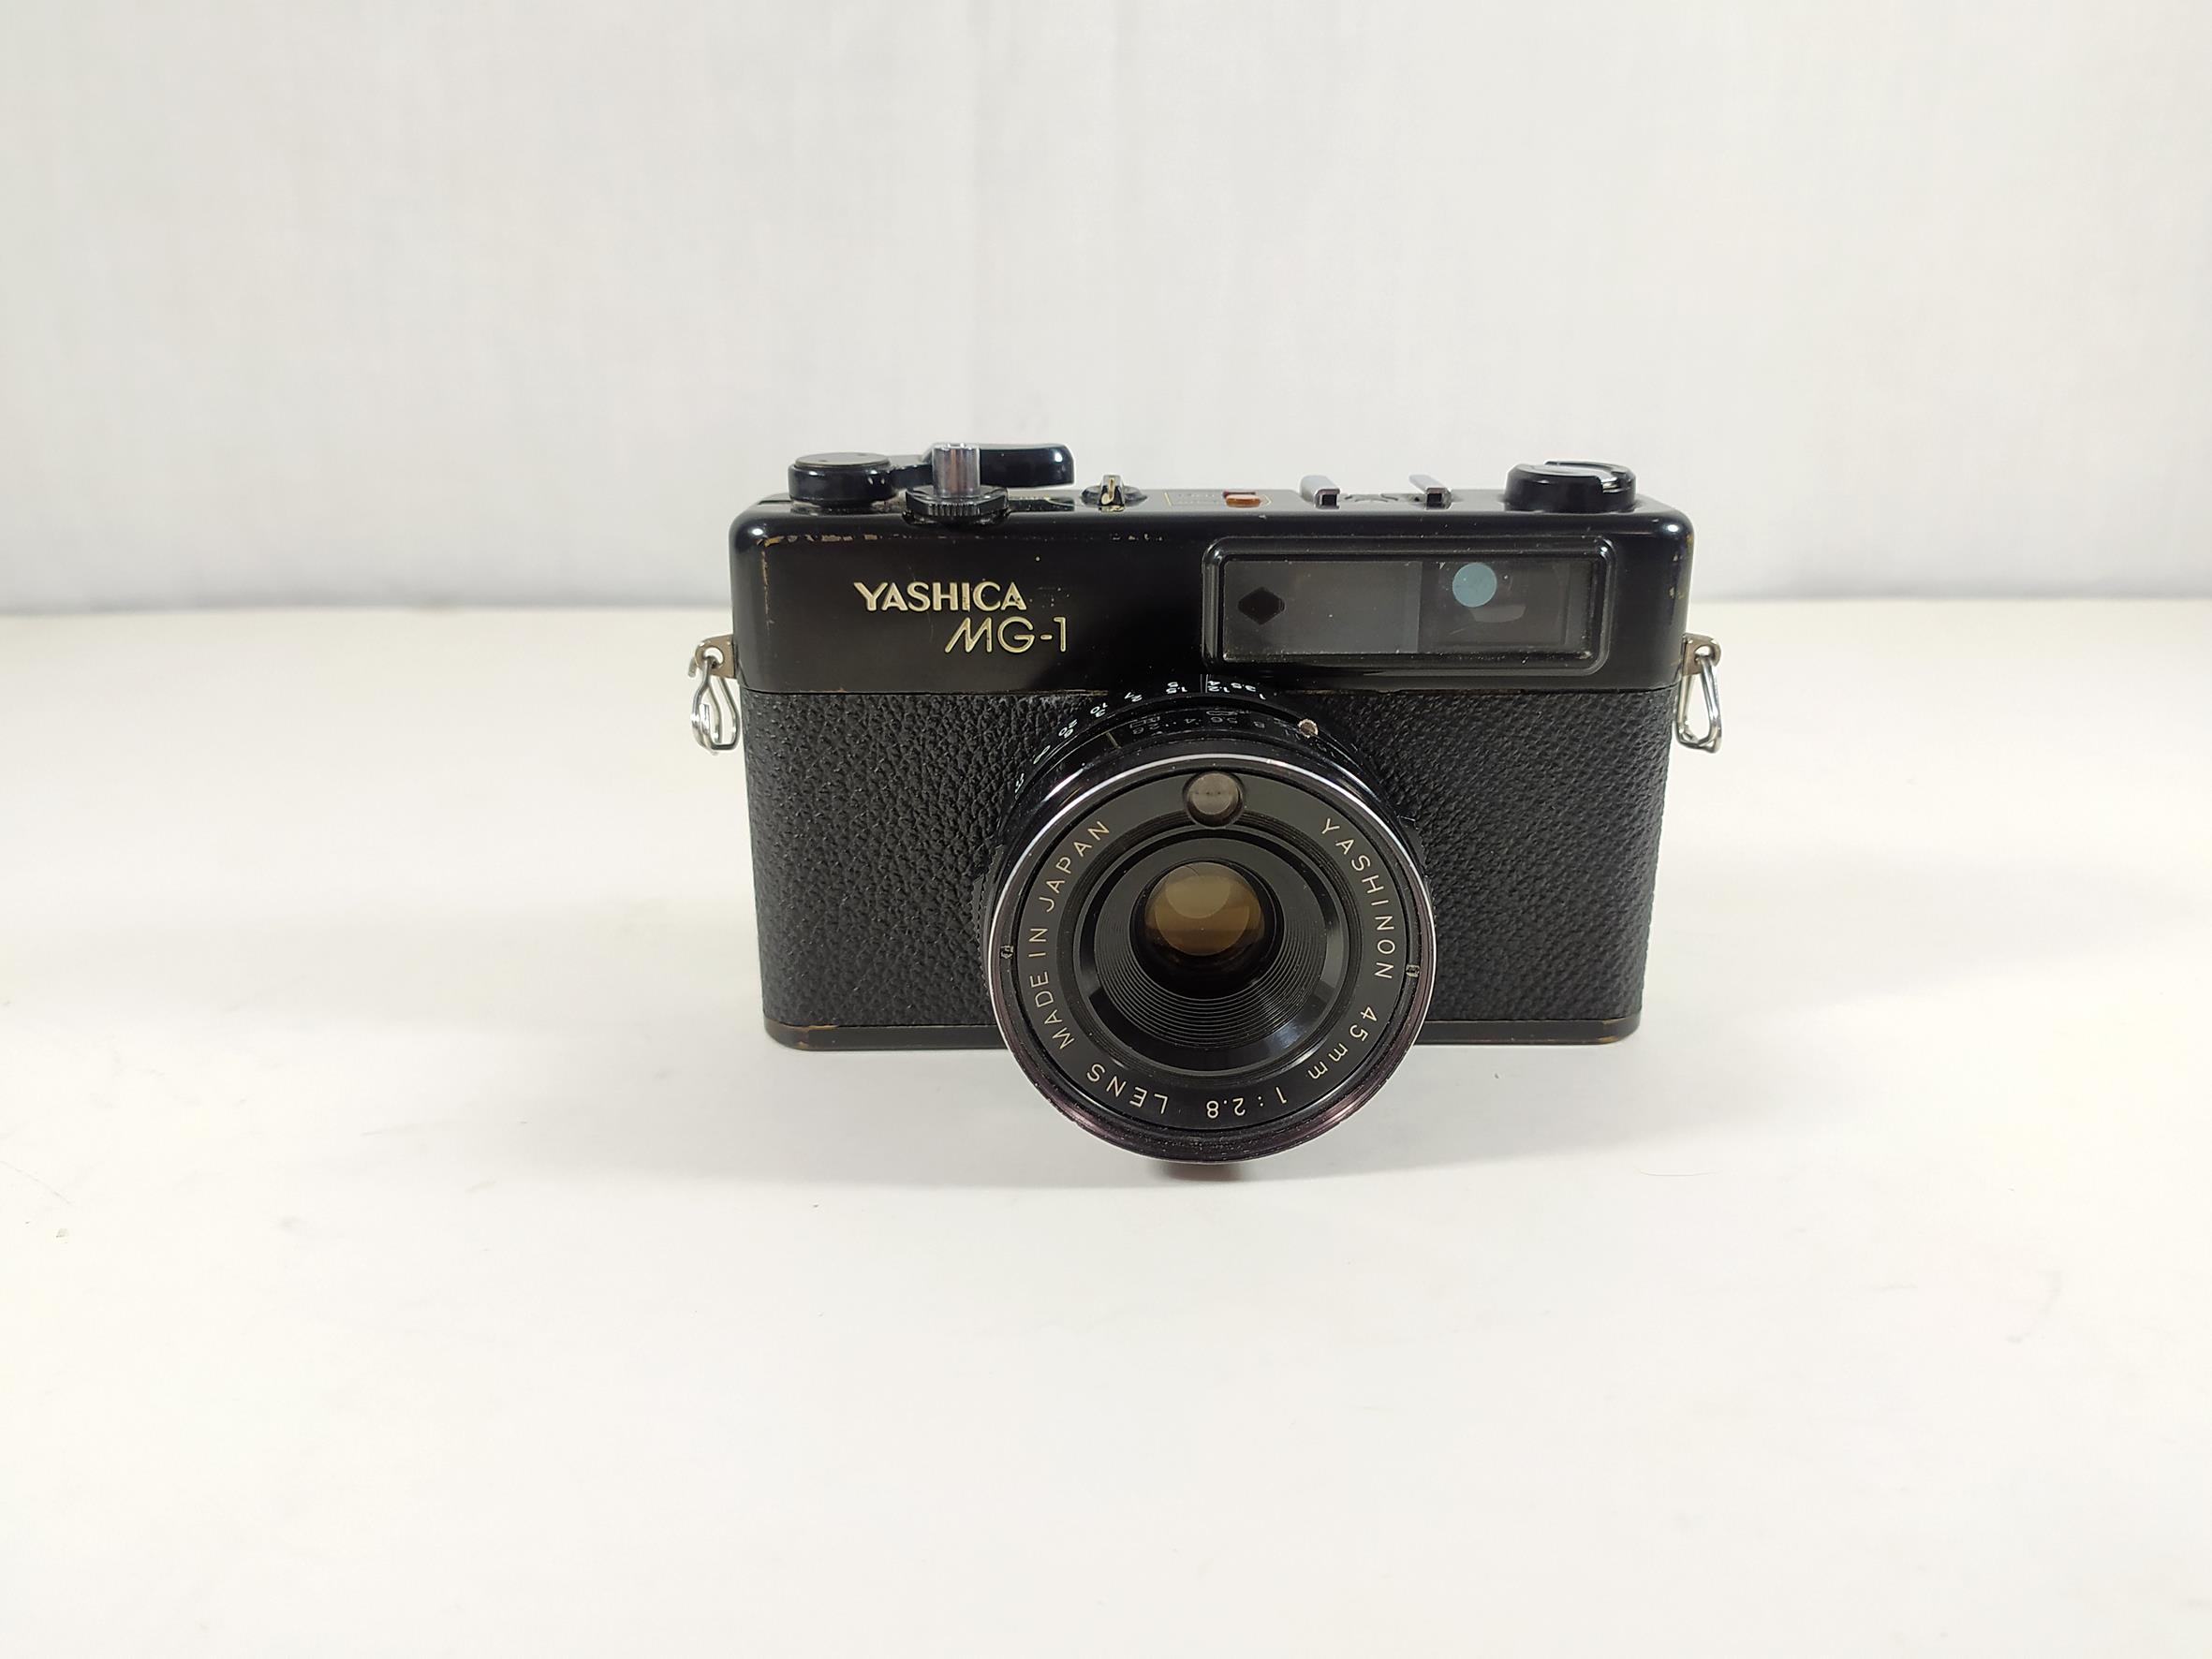 دوربین یاشیکا مدل Yashica MG-1 مشکی